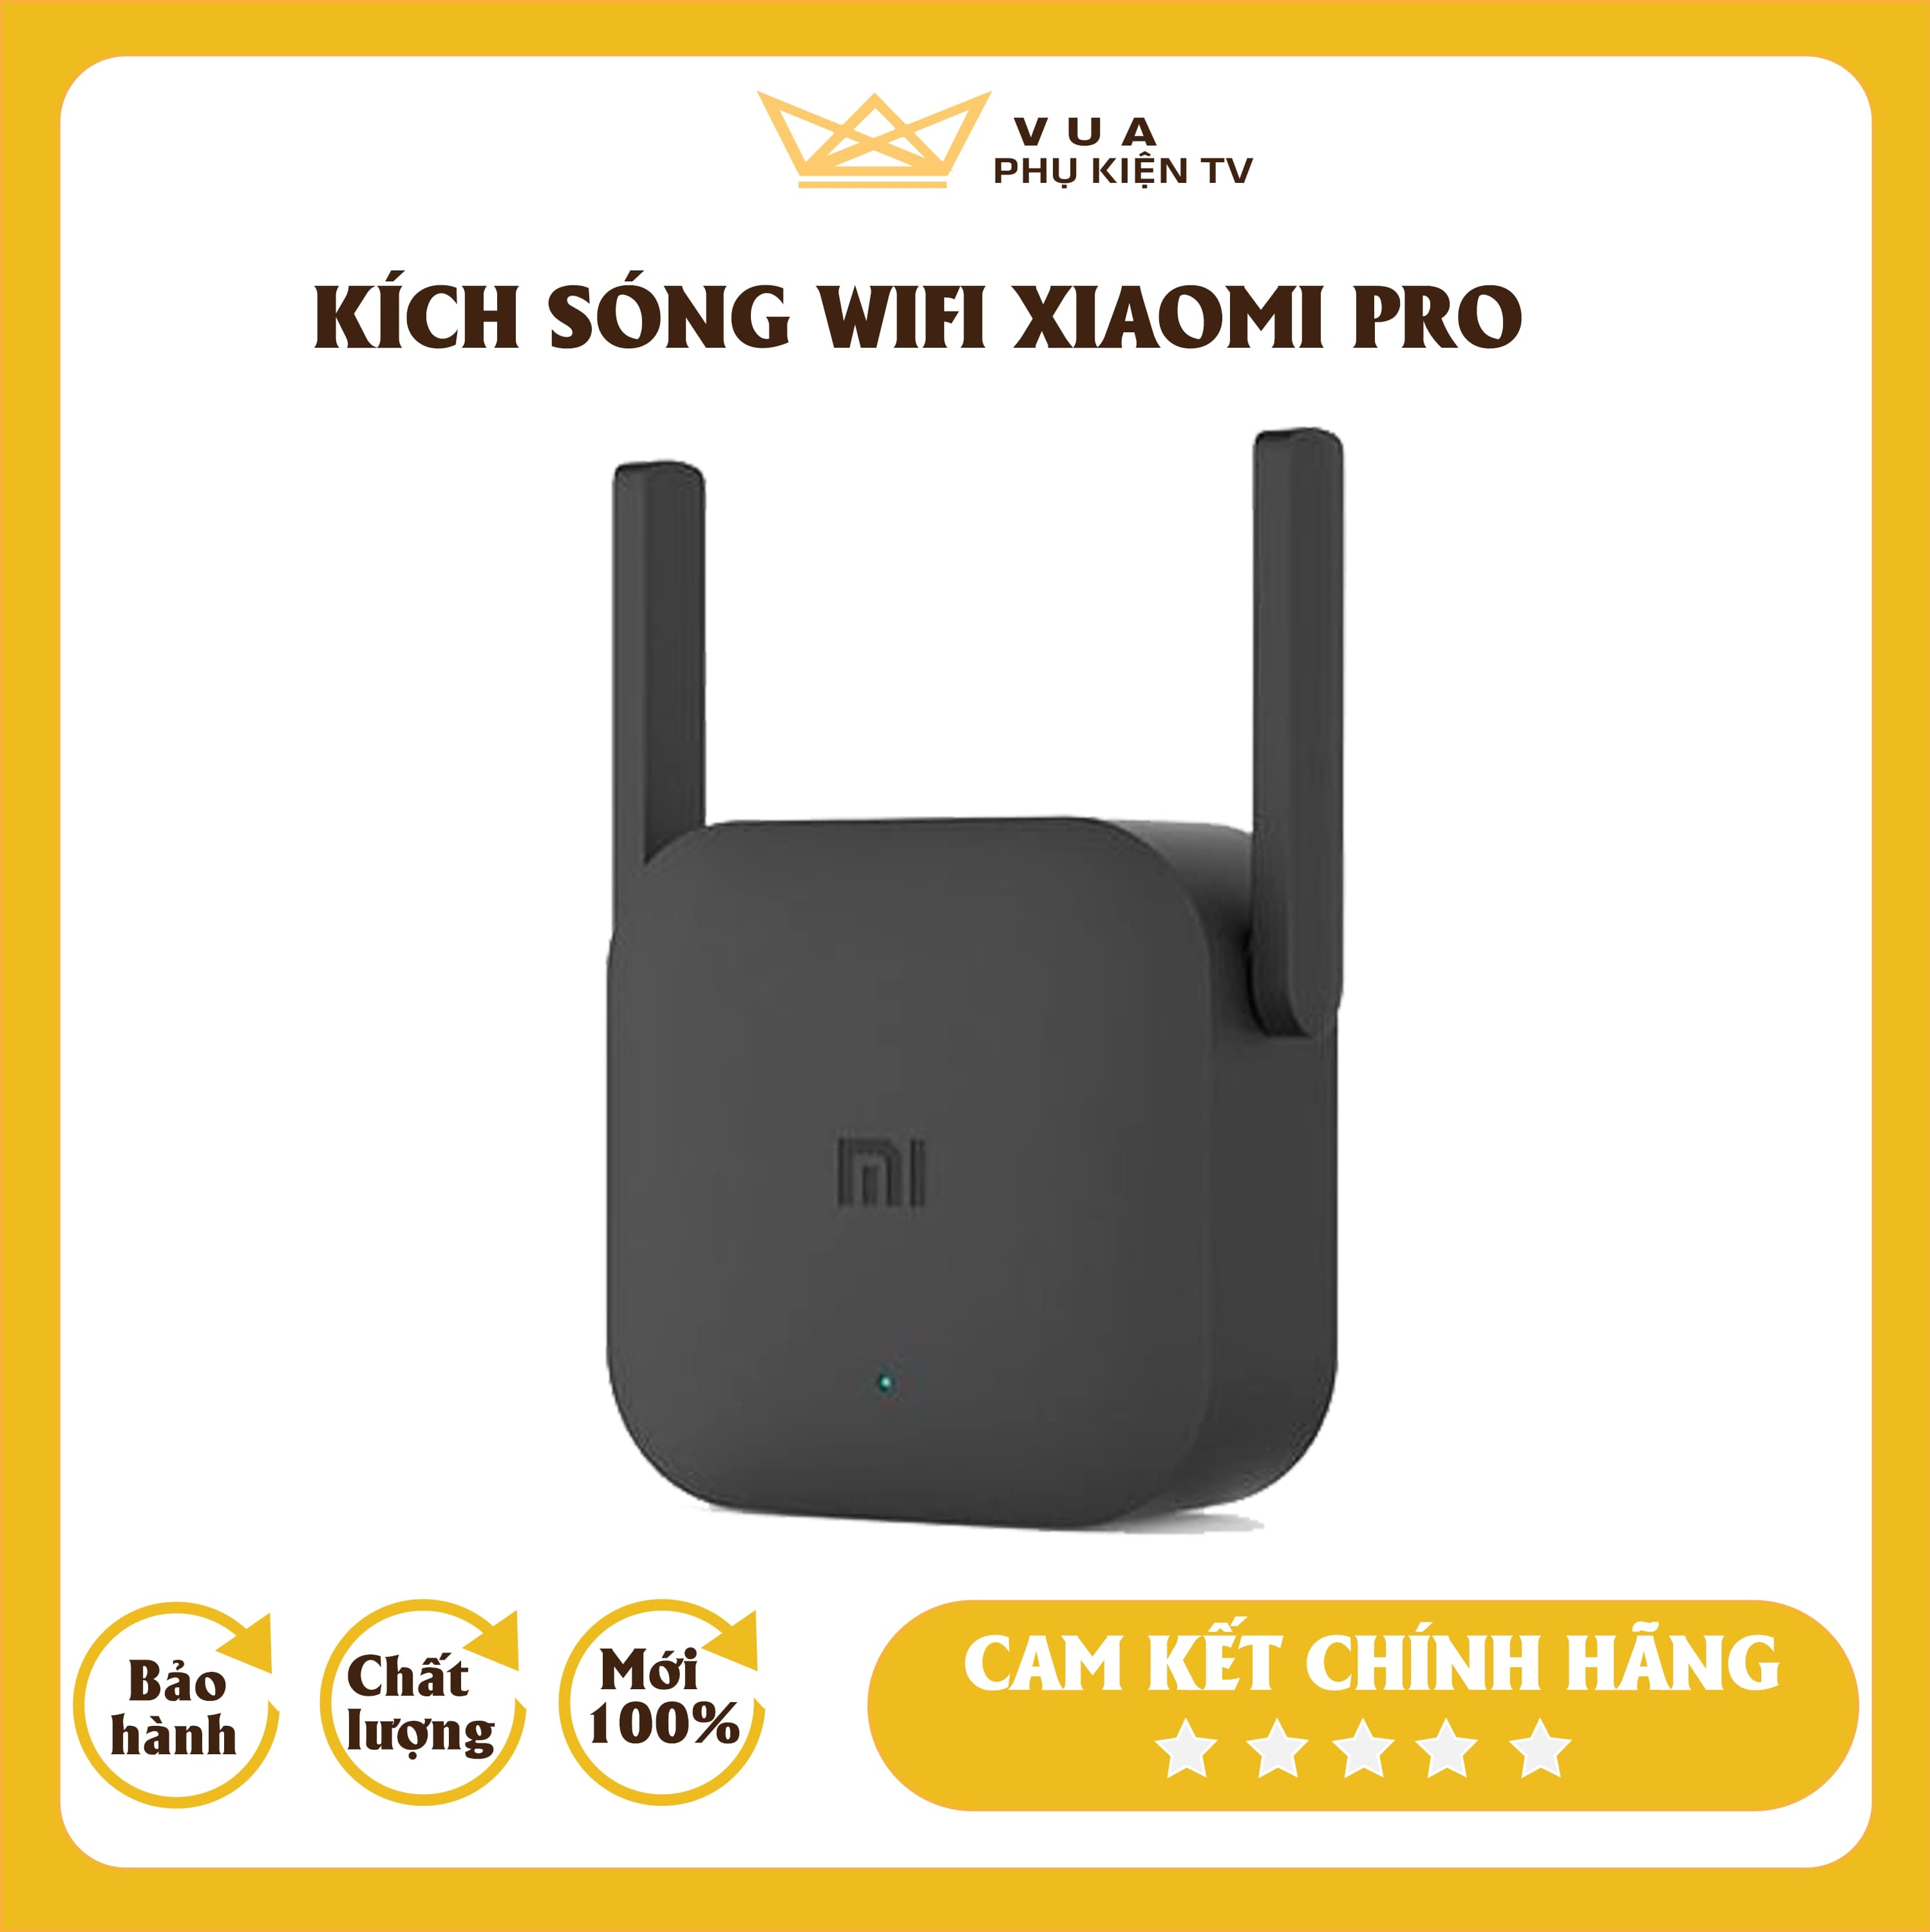 [FREESHIP - SÓNG CỰC MẠNH]Thiết bị kích sóng Wifi Xiaomi Repeater Pro sóng cực mạnh giá rẻ chính hãng Bảo Hành 6 Tháng, Kích sóng xiaomi Phân Phối Bởi Vua Phụ Kiện TV